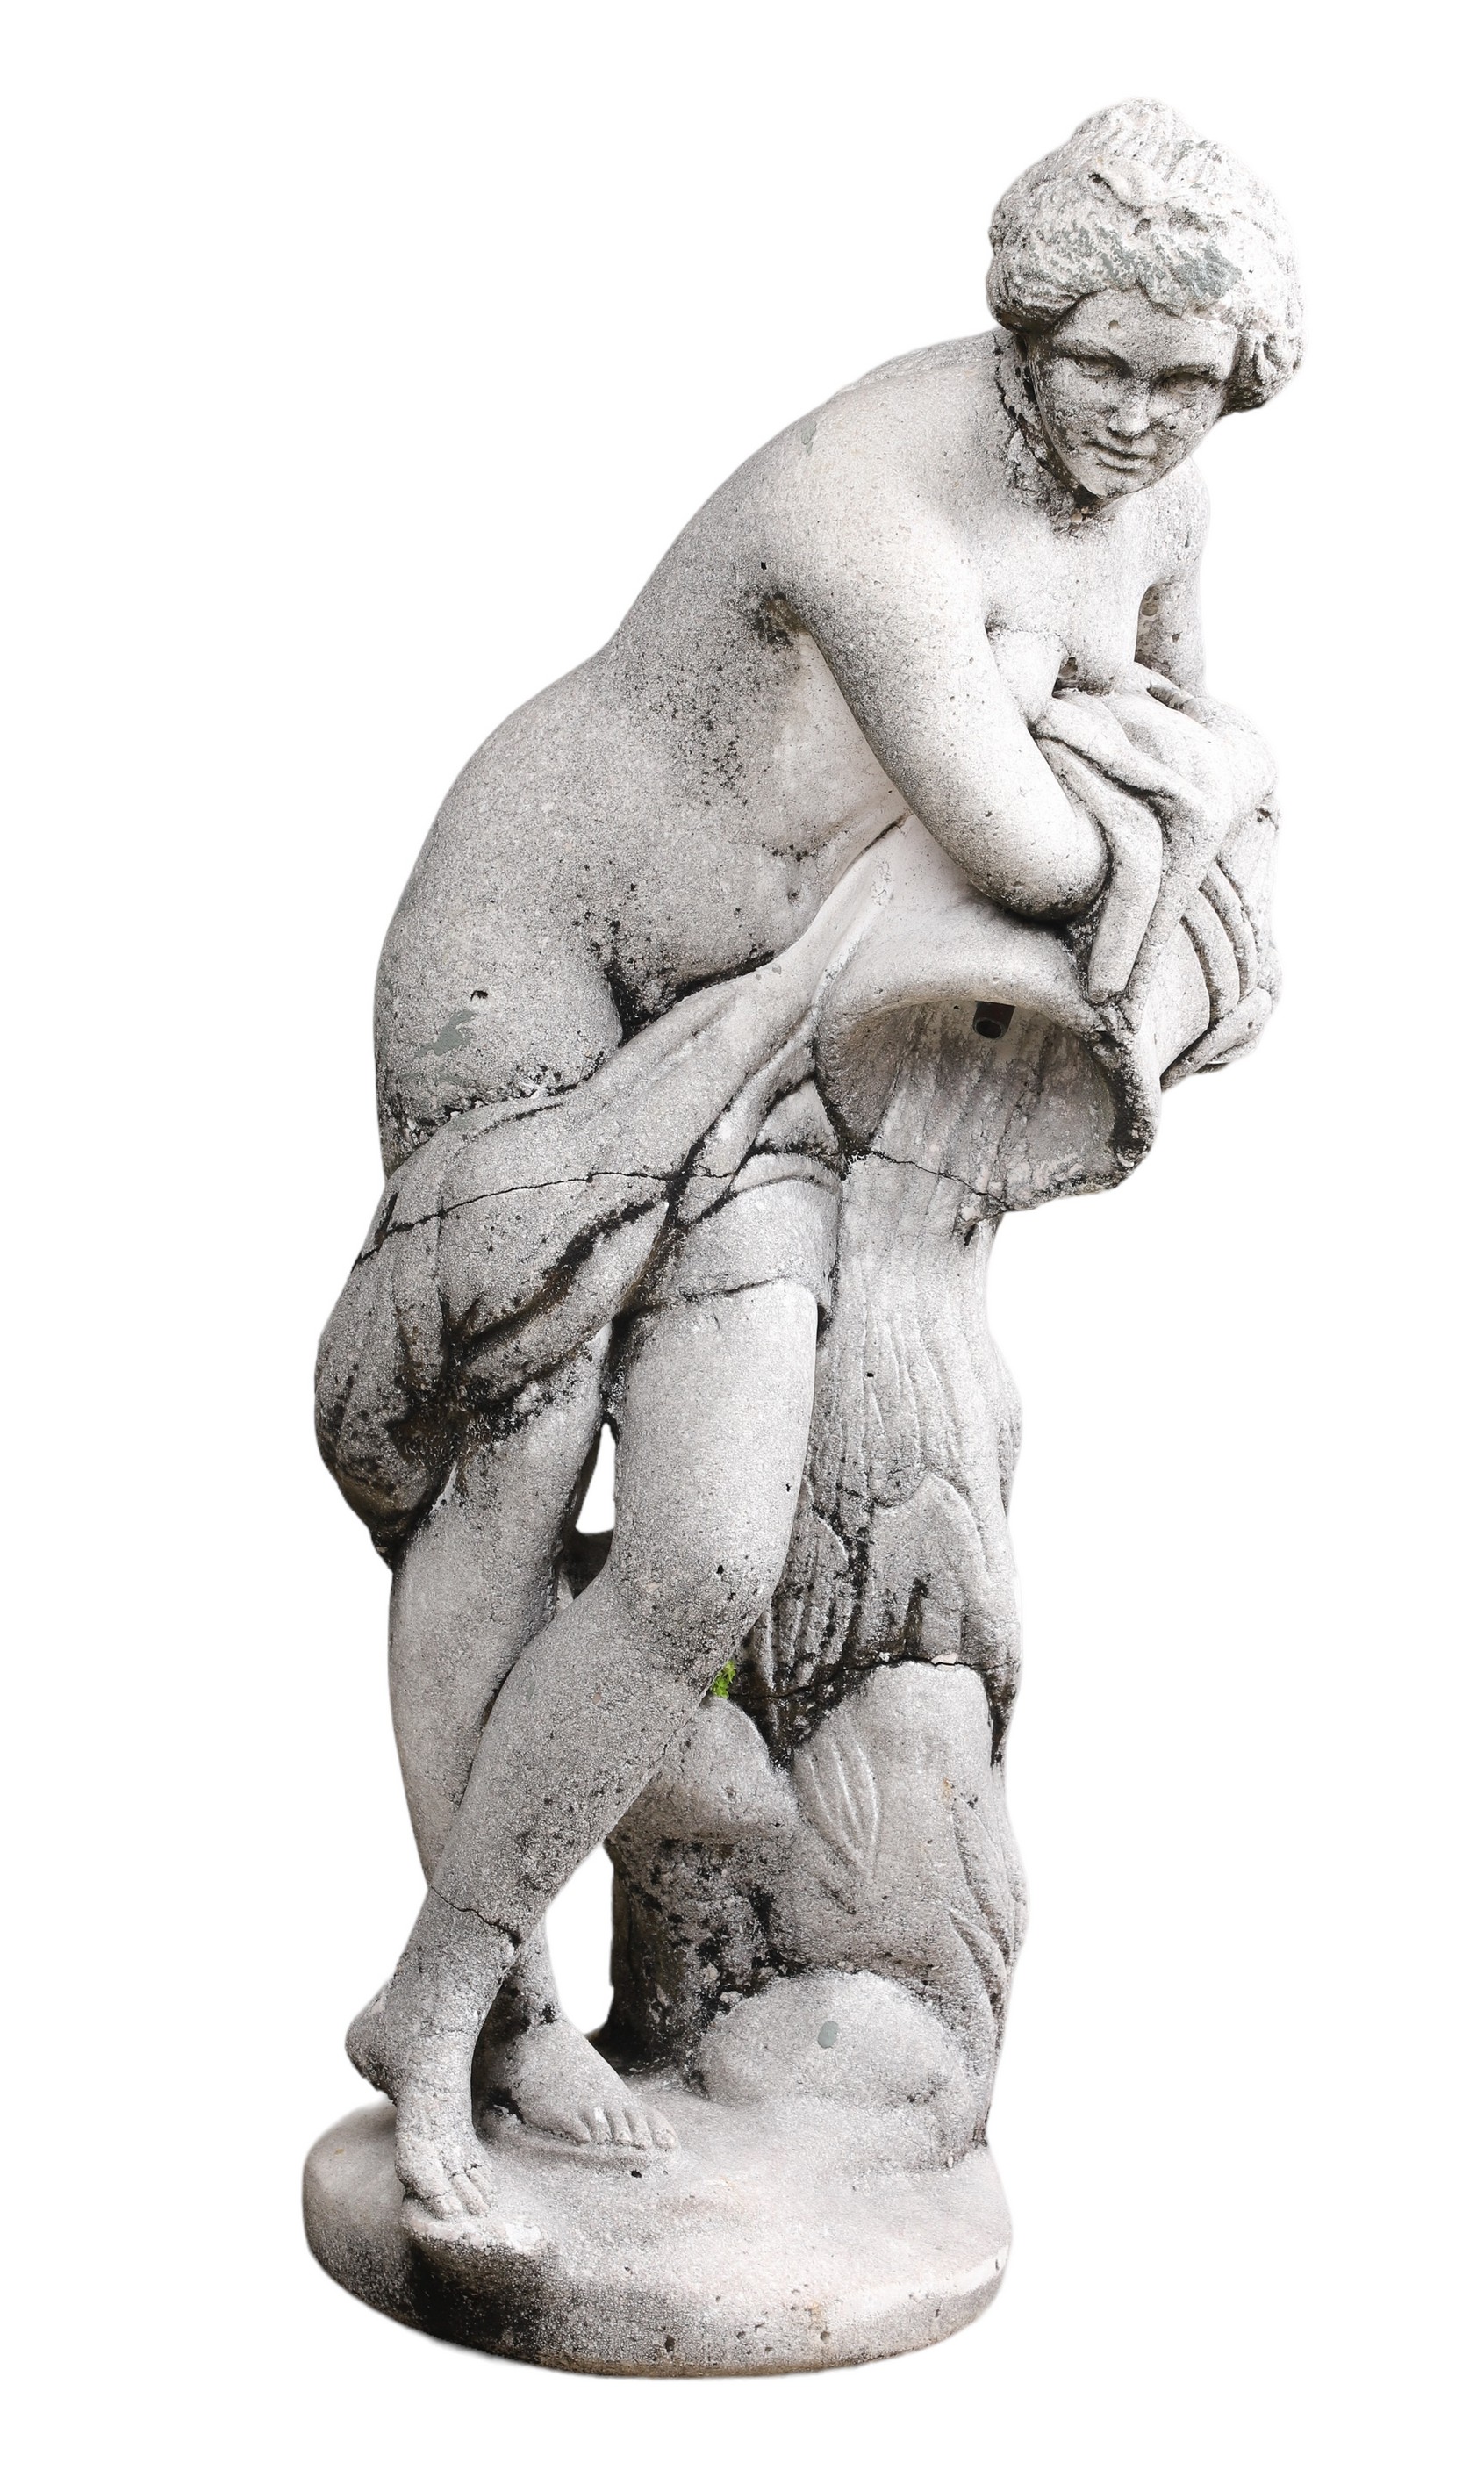 Cement garden statue of nude maiden 2e14ea